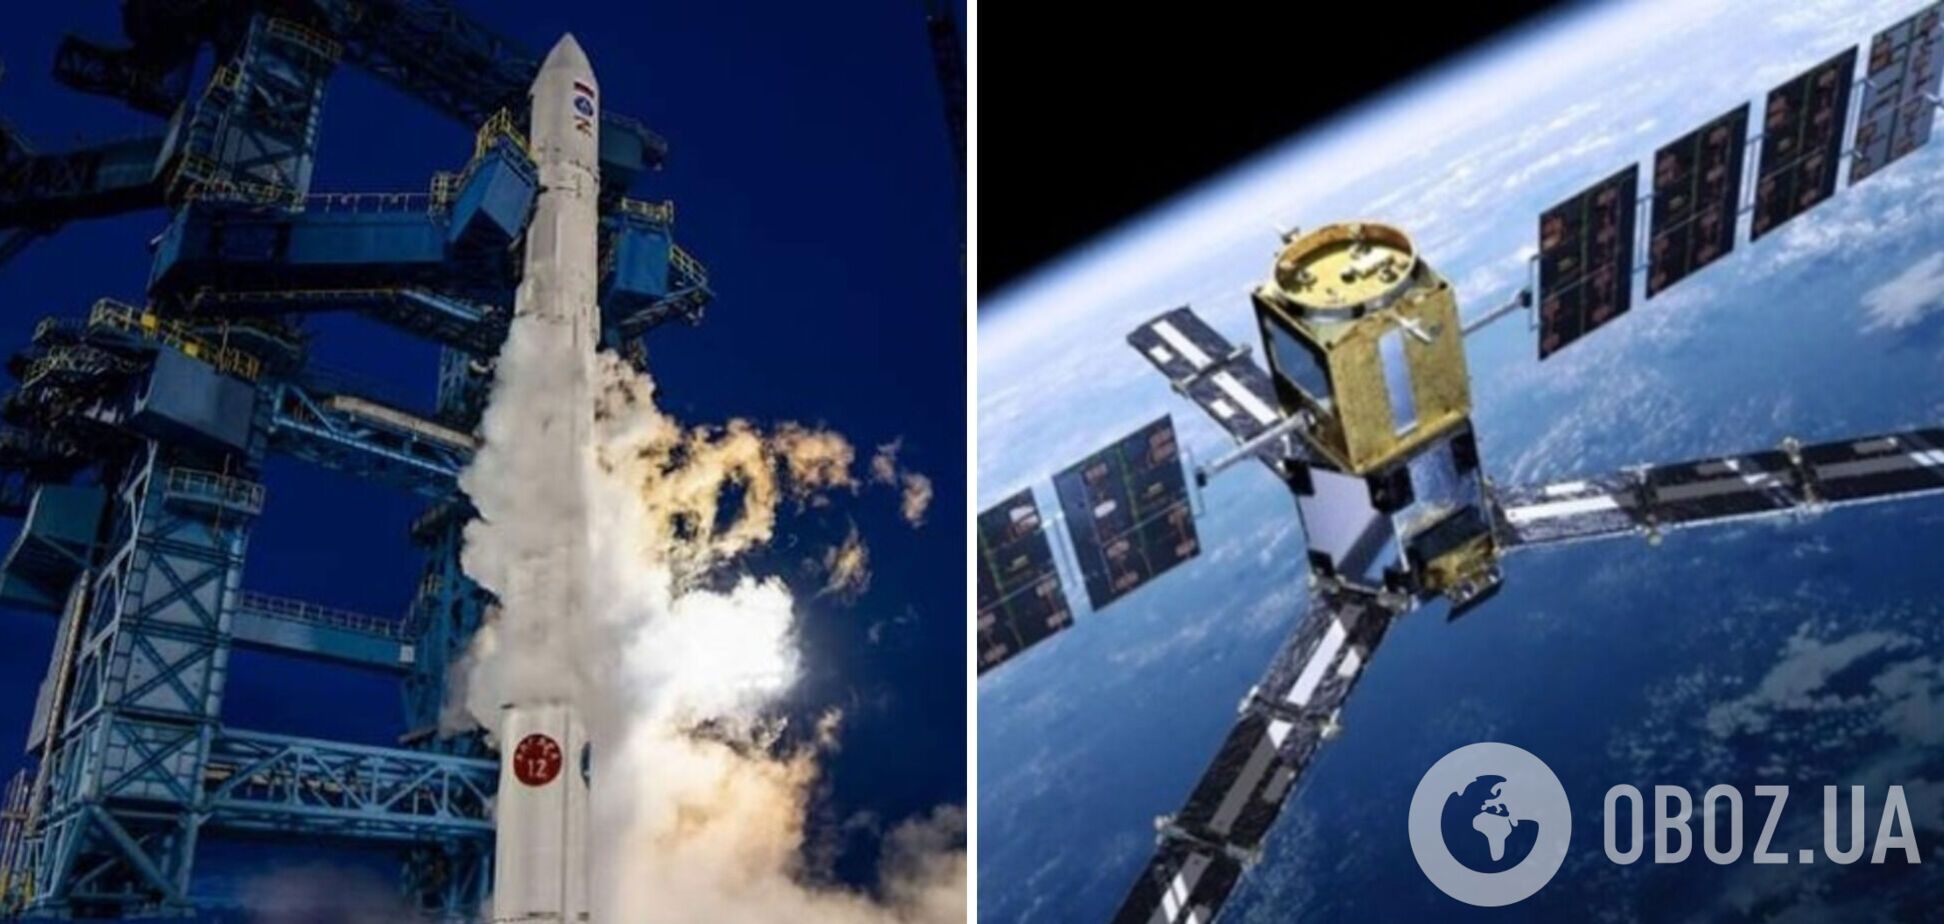 Ще один російський супутник зійшов з орбіти і згорів в атмосфері